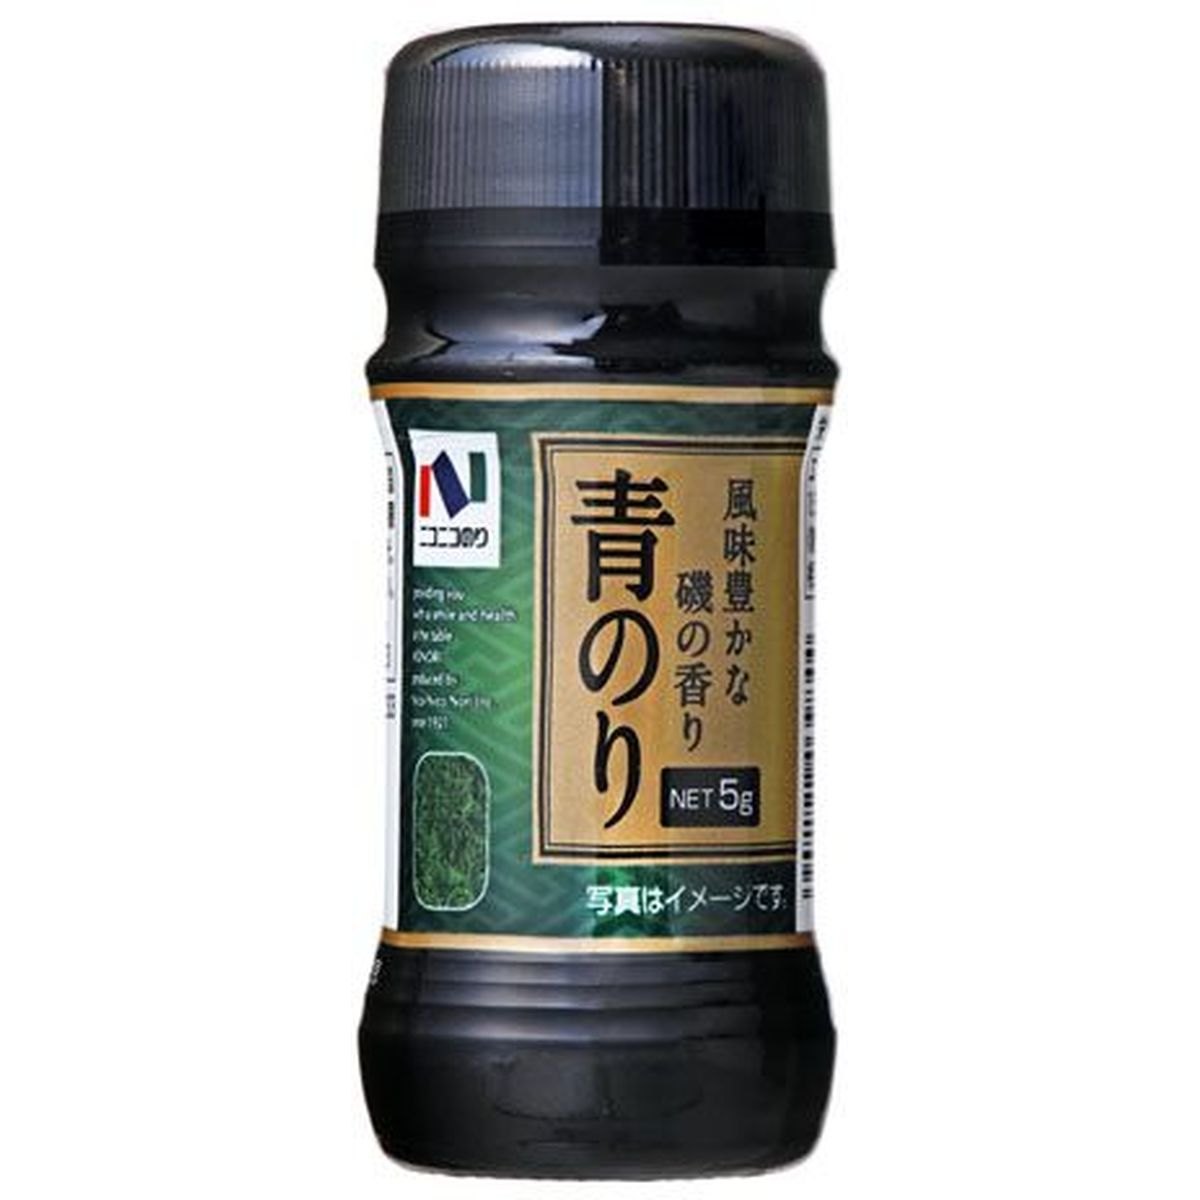 【10個入リ】ニコニコノリ 青ノリ 瓶 5g